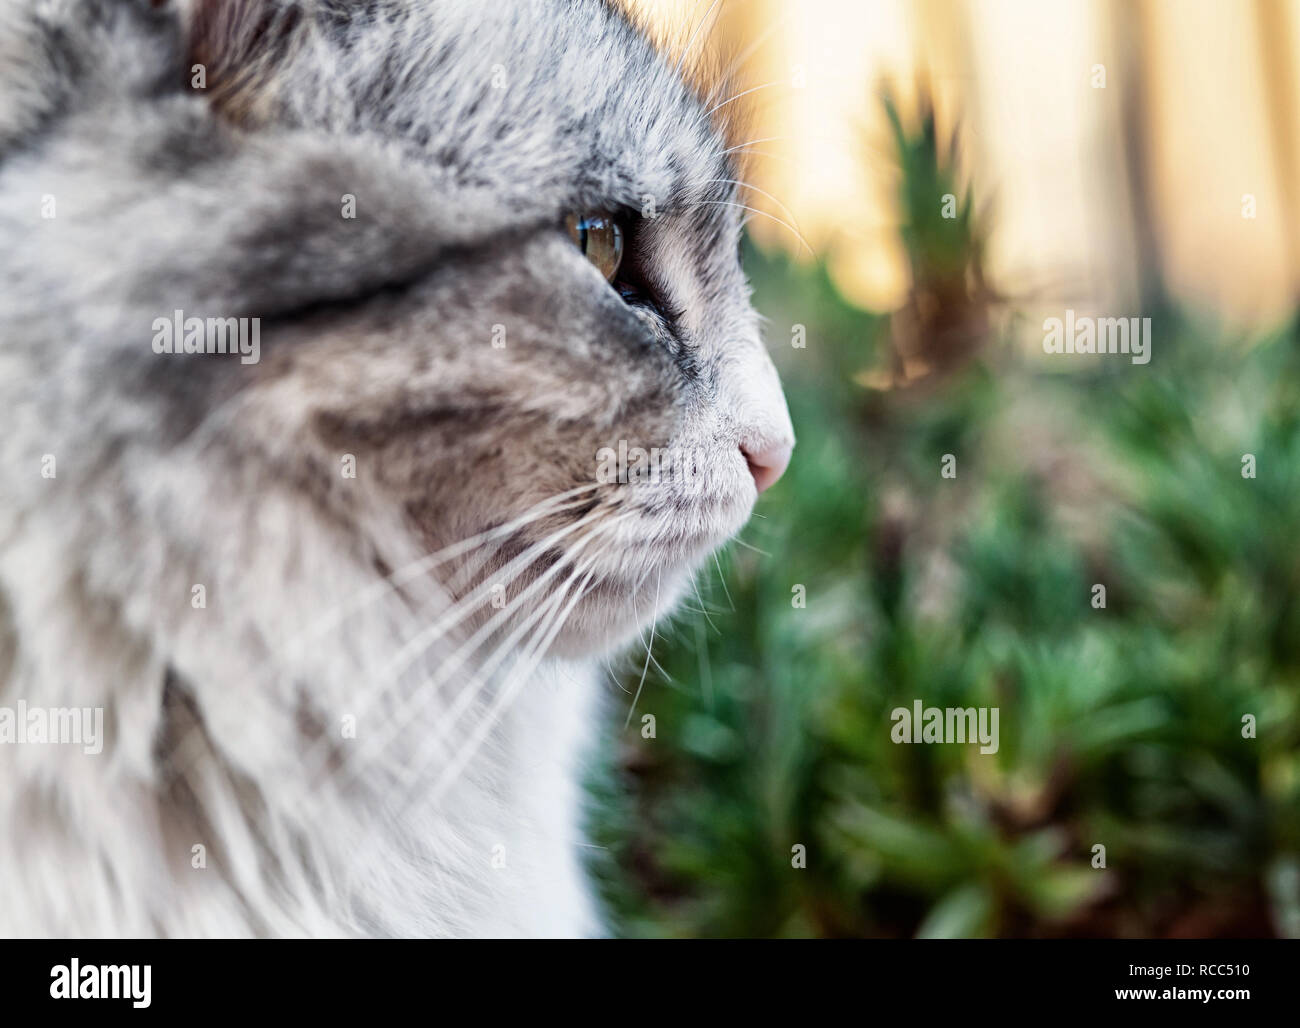 Porträt einer wunderschönen langhaarigen Katze, weiss und grau mit gelben Augen. Stockfoto